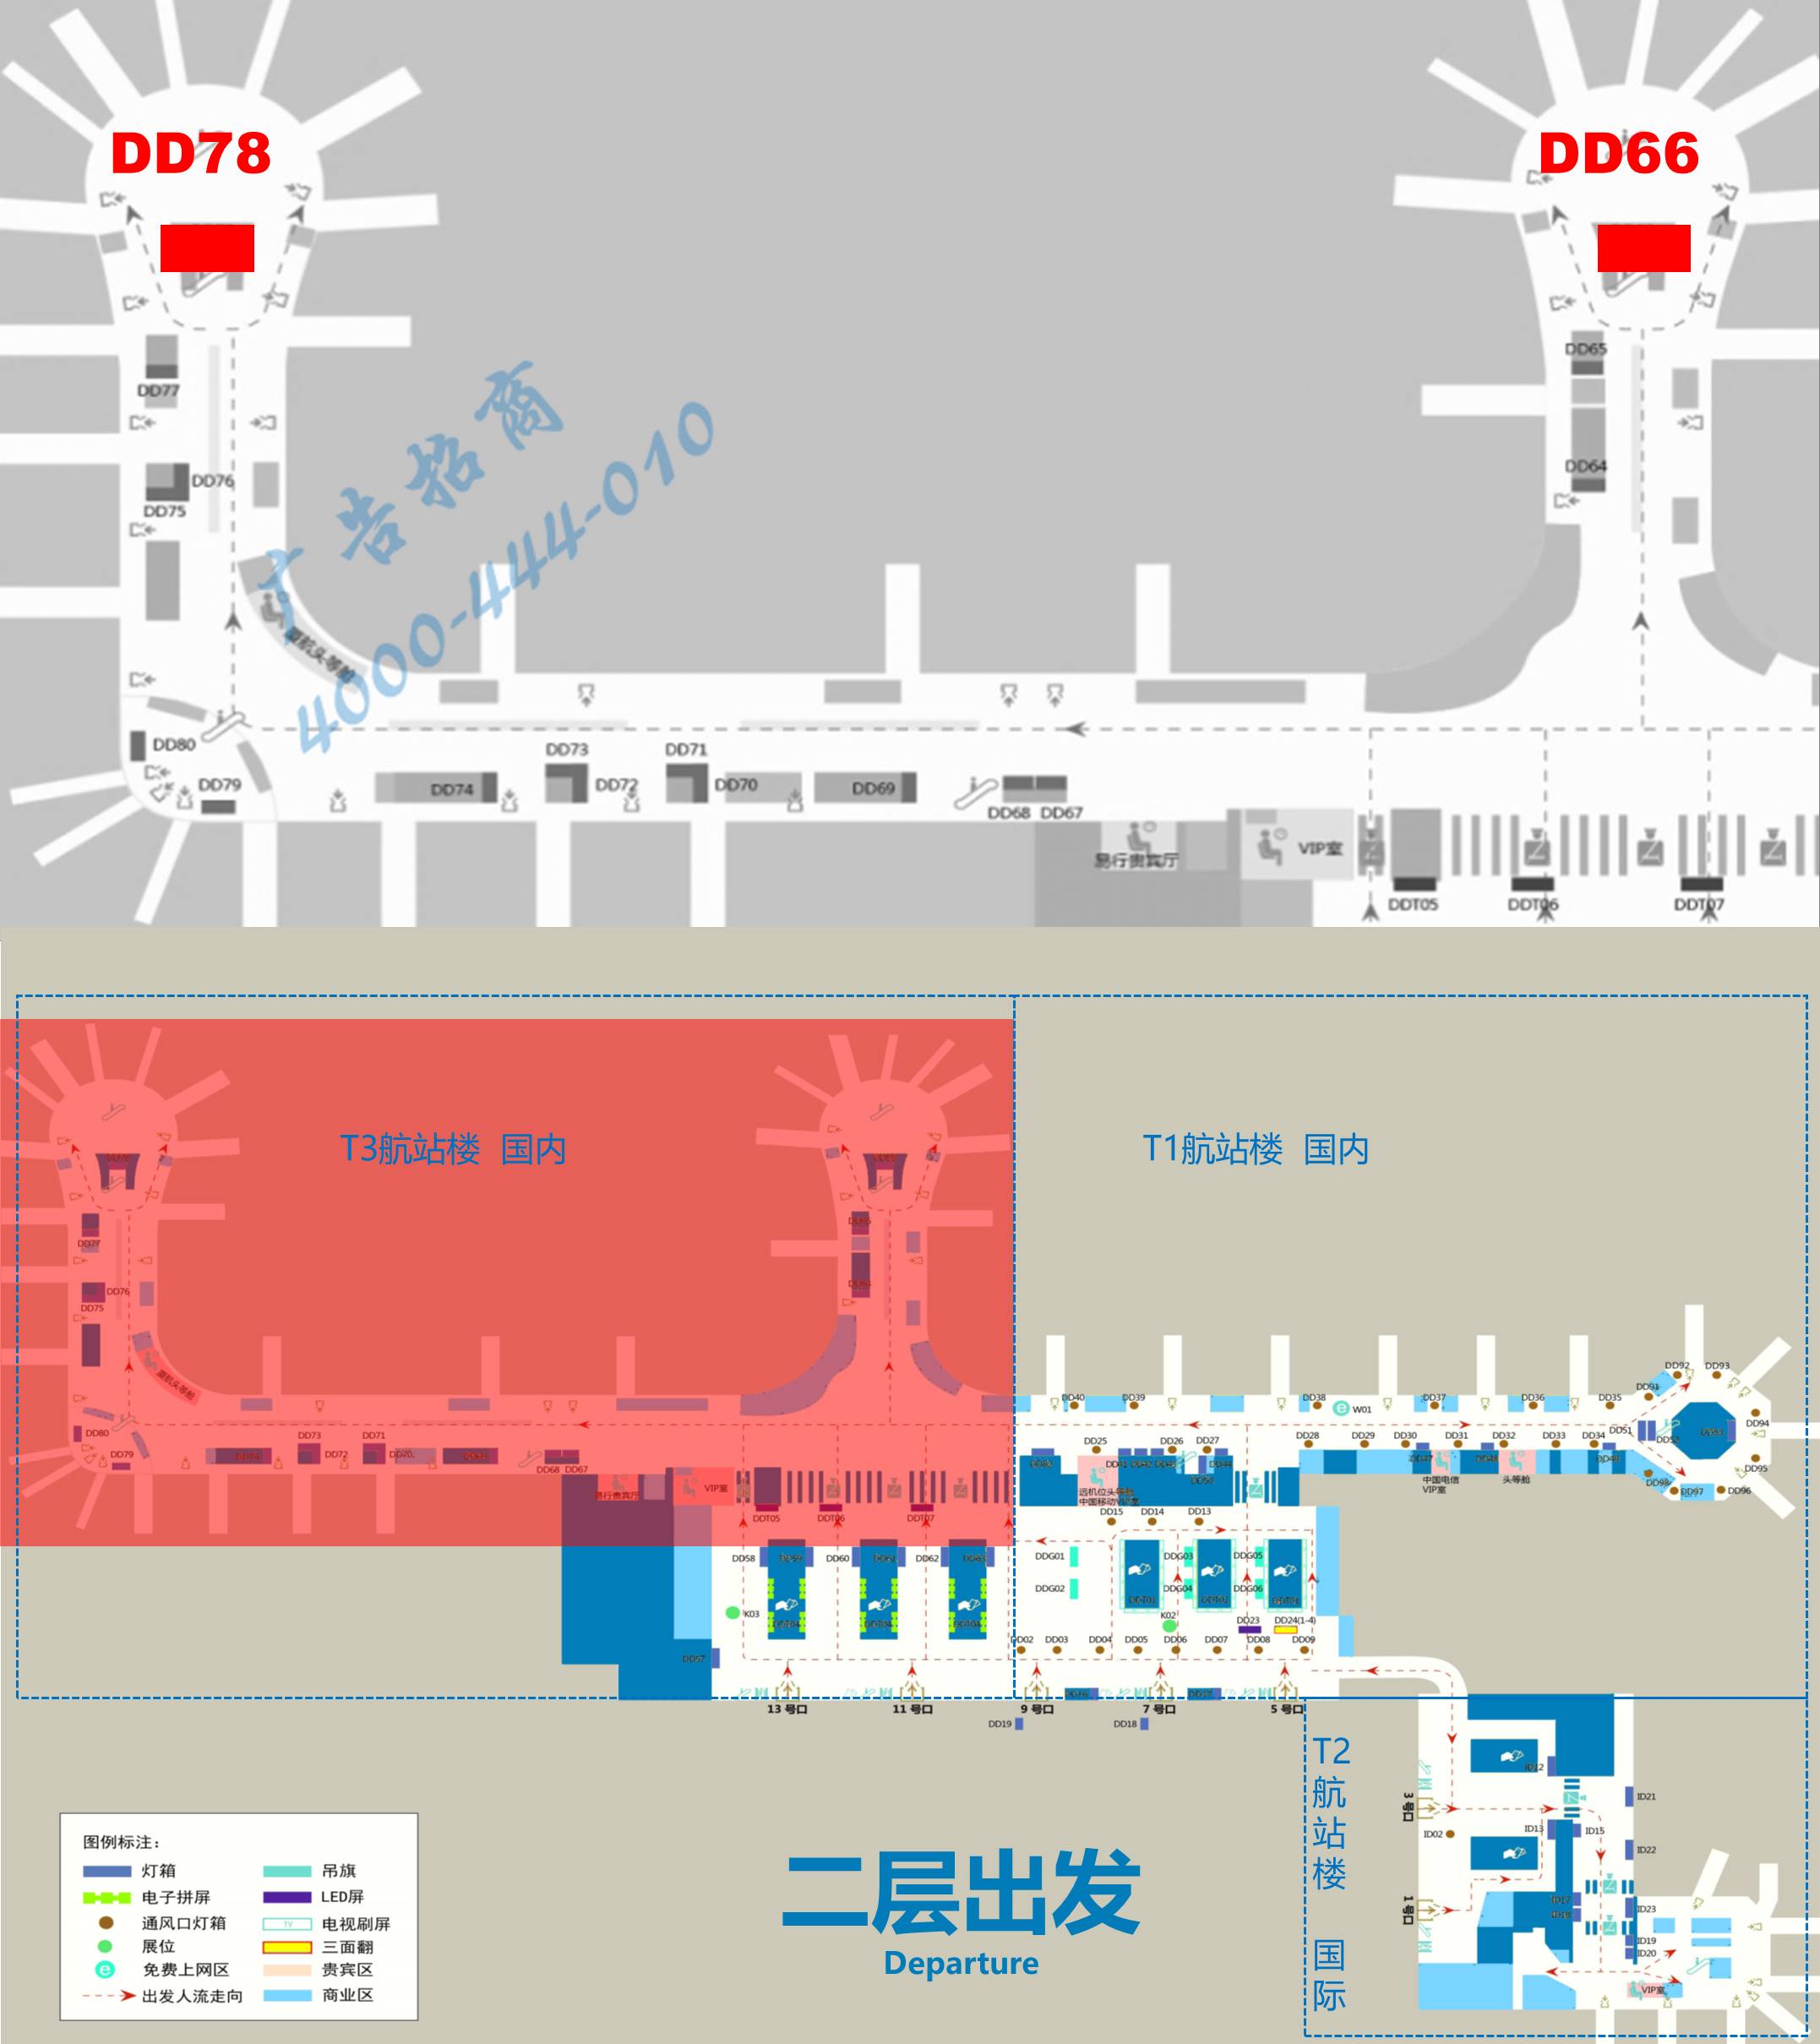 杭州萧山机场广告-T3指廊电梯口灯箱DD66/78位置图